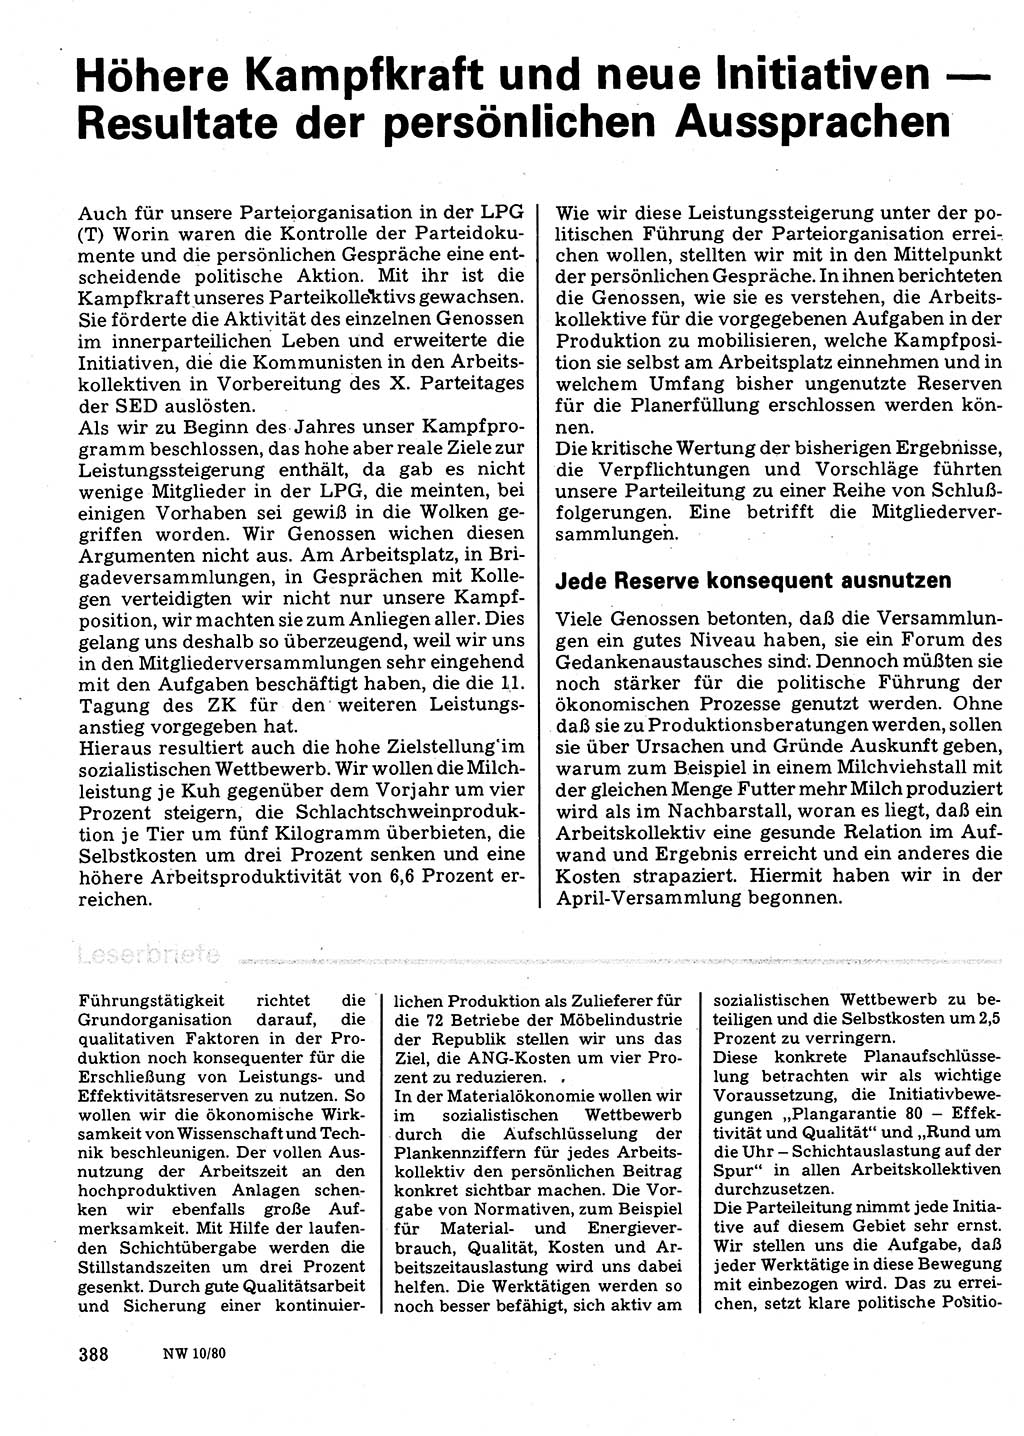 Neuer Weg (NW), Organ des Zentralkomitees (ZK) der SED (Sozialistische Einheitspartei Deutschlands) für Fragen des Parteilebens, 35. Jahrgang [Deutsche Demokratische Republik (DDR)] 1980, Seite 388 (NW ZK SED DDR 1980, S. 388)